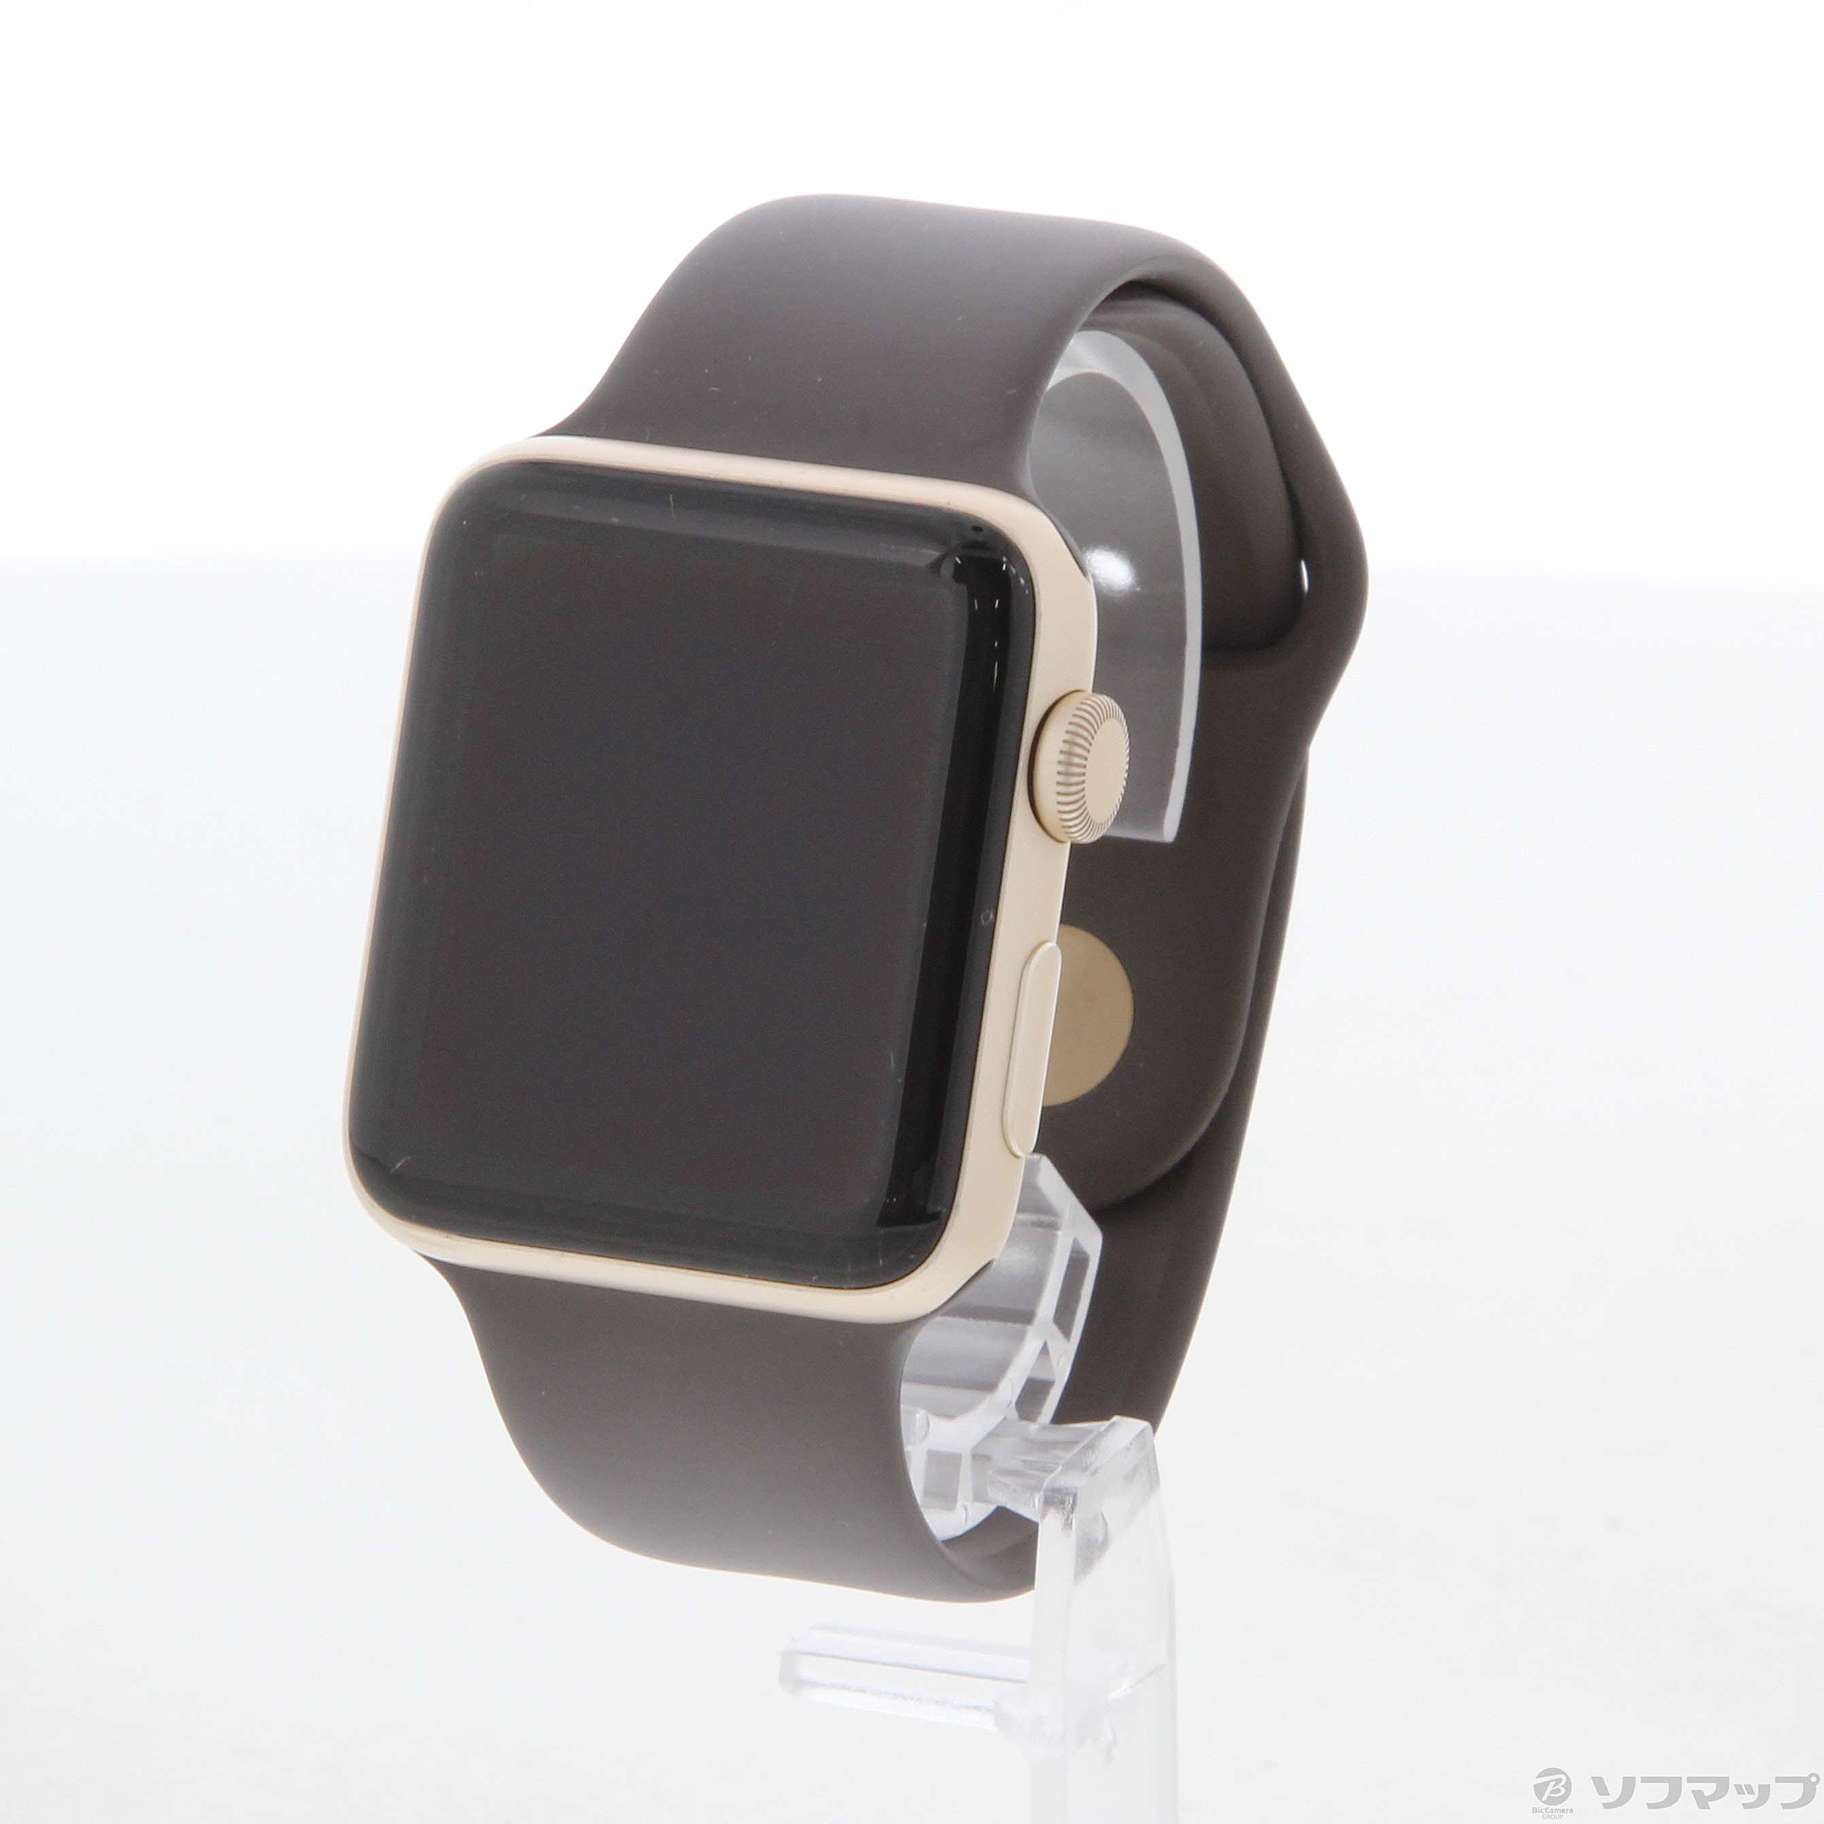 42mm】ゴールド Apple Watch series2 アルミケース-me.com.kw